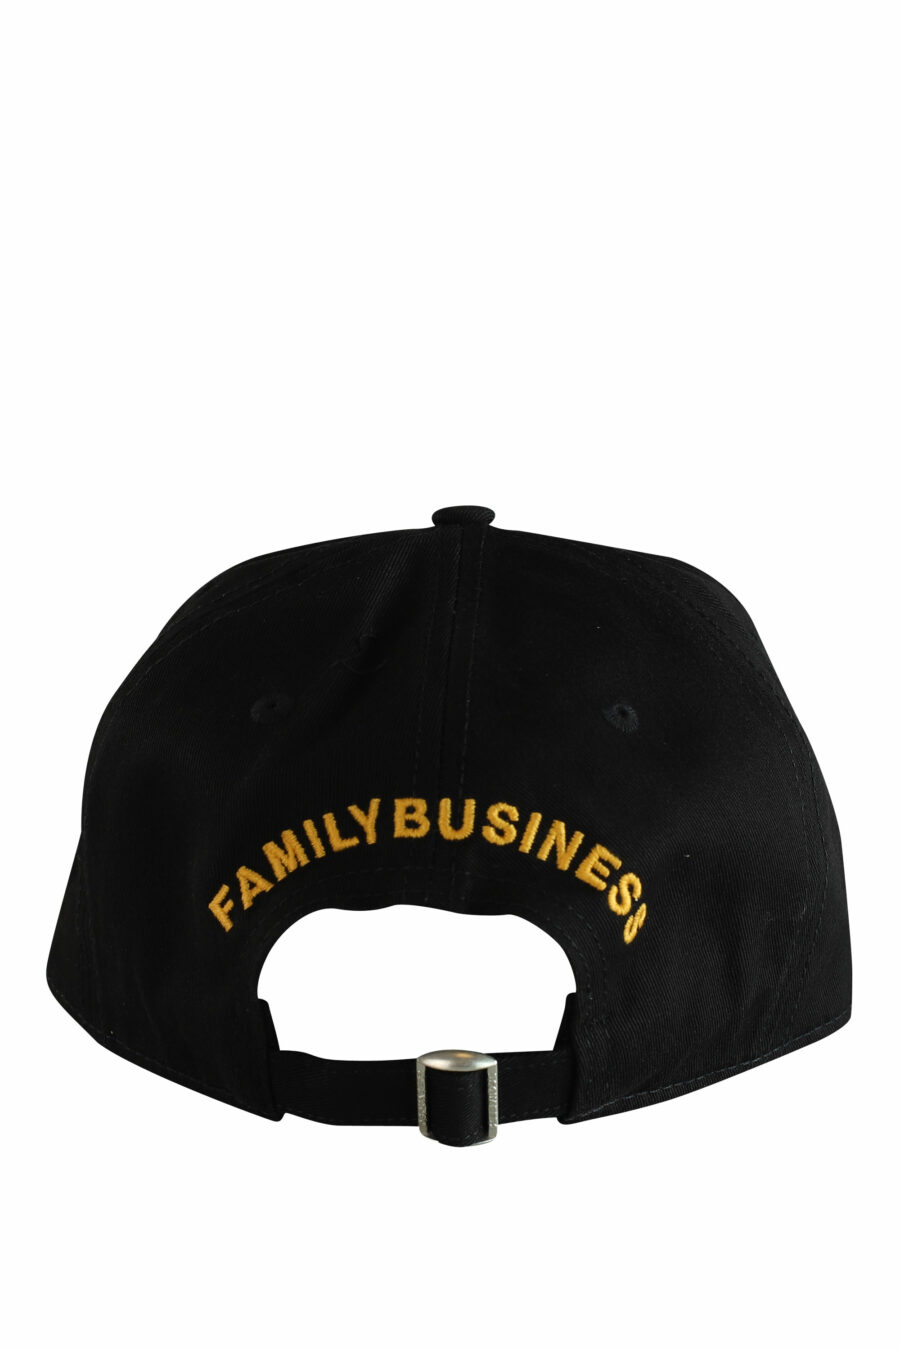 Gorra negra con recuadro blanco con logo y detalles amarillos - IMG 1241